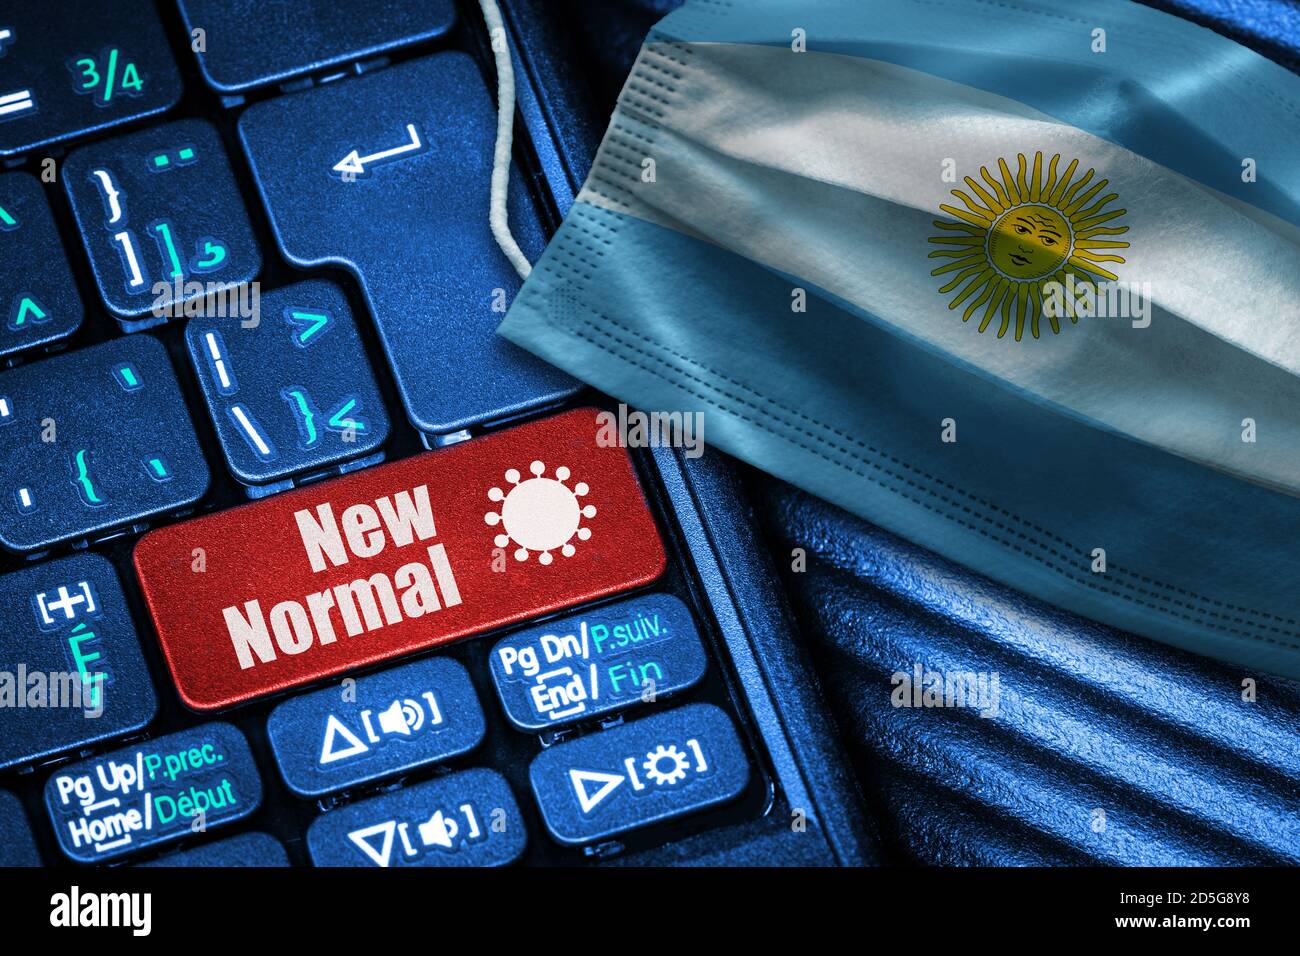 Concept de la nouvelle normale en Argentine pendant Covid-19 avec clavier d'ordinateur rouge bouton texte et masque de visage montrant le drapeau argentin. Banque D'Images